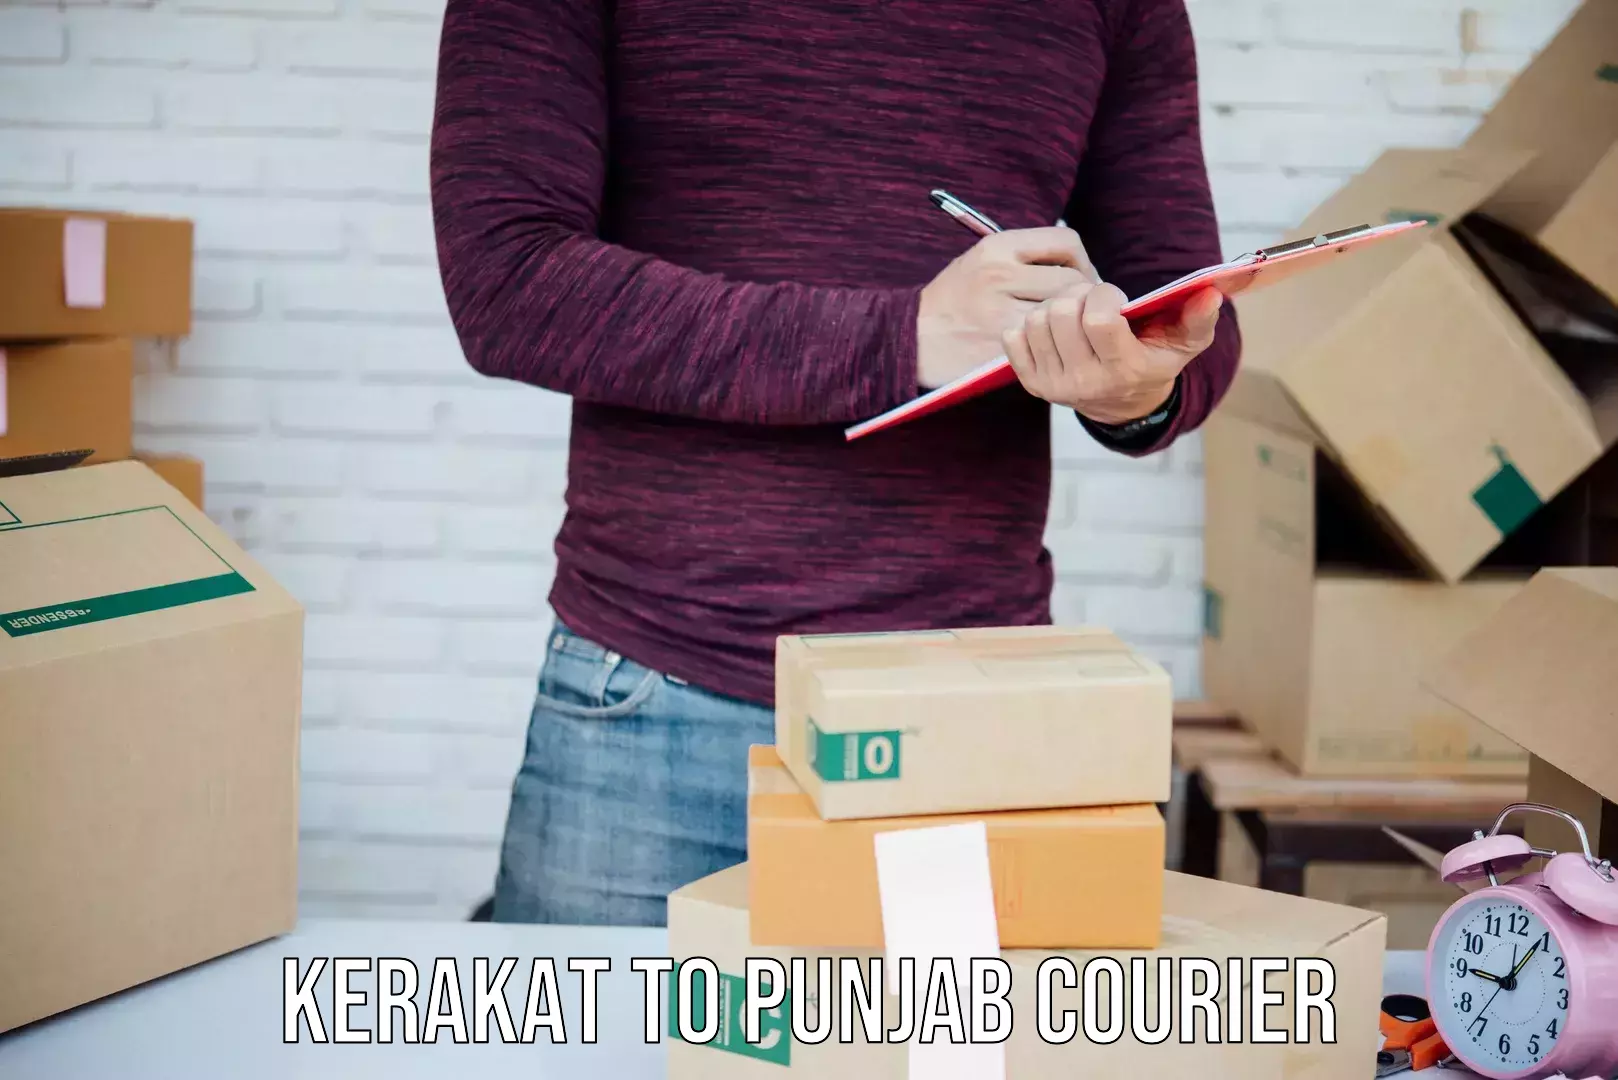 Local courier options Kerakat to Raikot